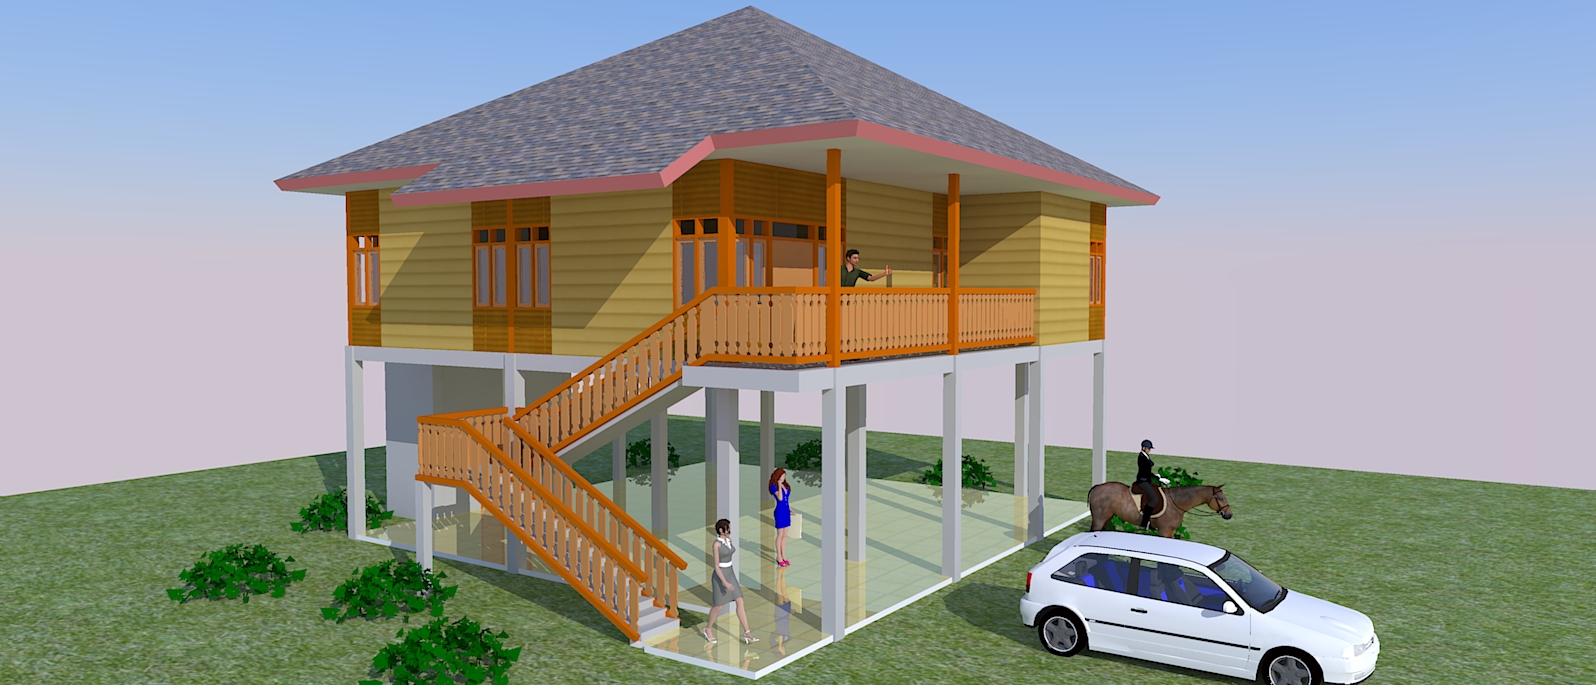 Plan Rumah Kayu Desainrumahid com